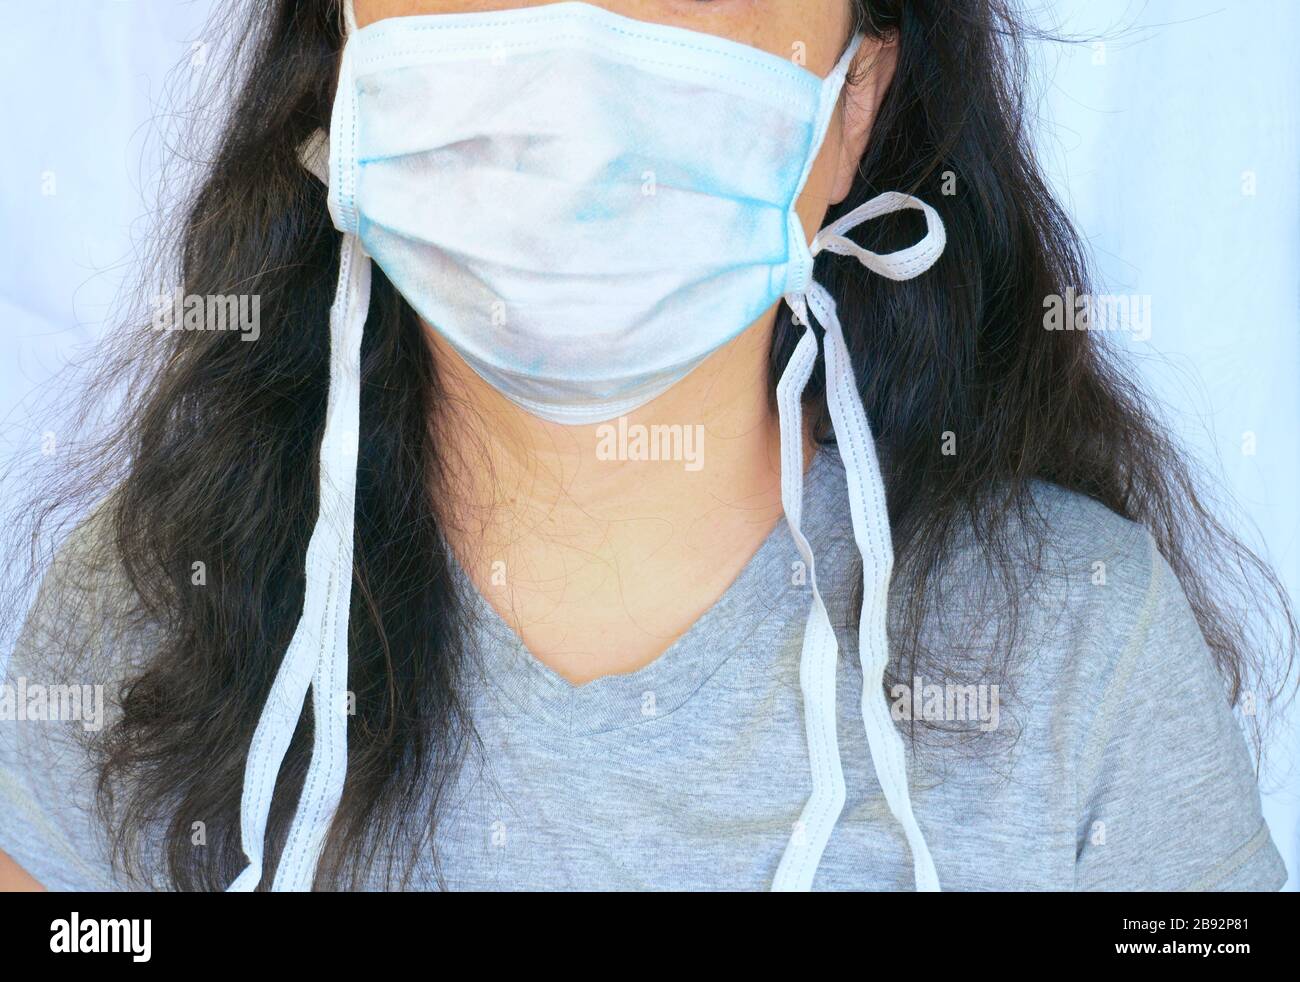 Frau, die während der neuartigen Coronavirus alias Covid-19-Pandemie eine normale präventiive Maske für chirurgische chirurgische chirurgische chirurgische chirurgische Körper trägt. Candid Porträt, Teilgesicht und Körper und langes Haar. Stockfoto